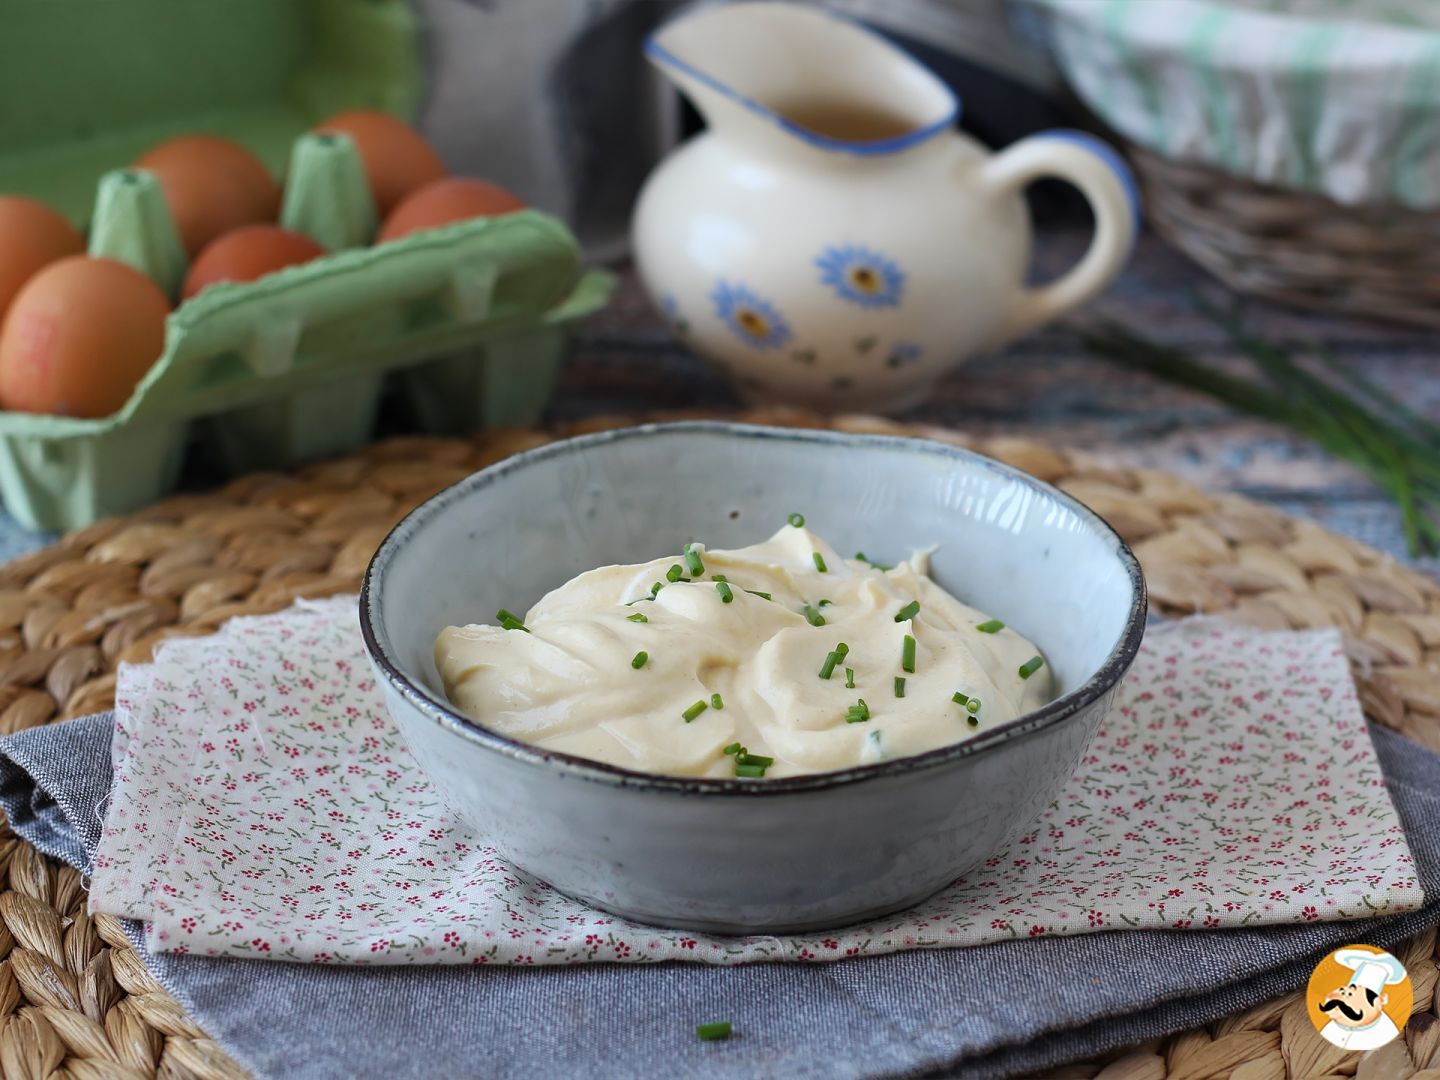 Voici la fameuse recette de mayonnaise aux oeufs durs qui cartonne sur les réseaux sociaux !